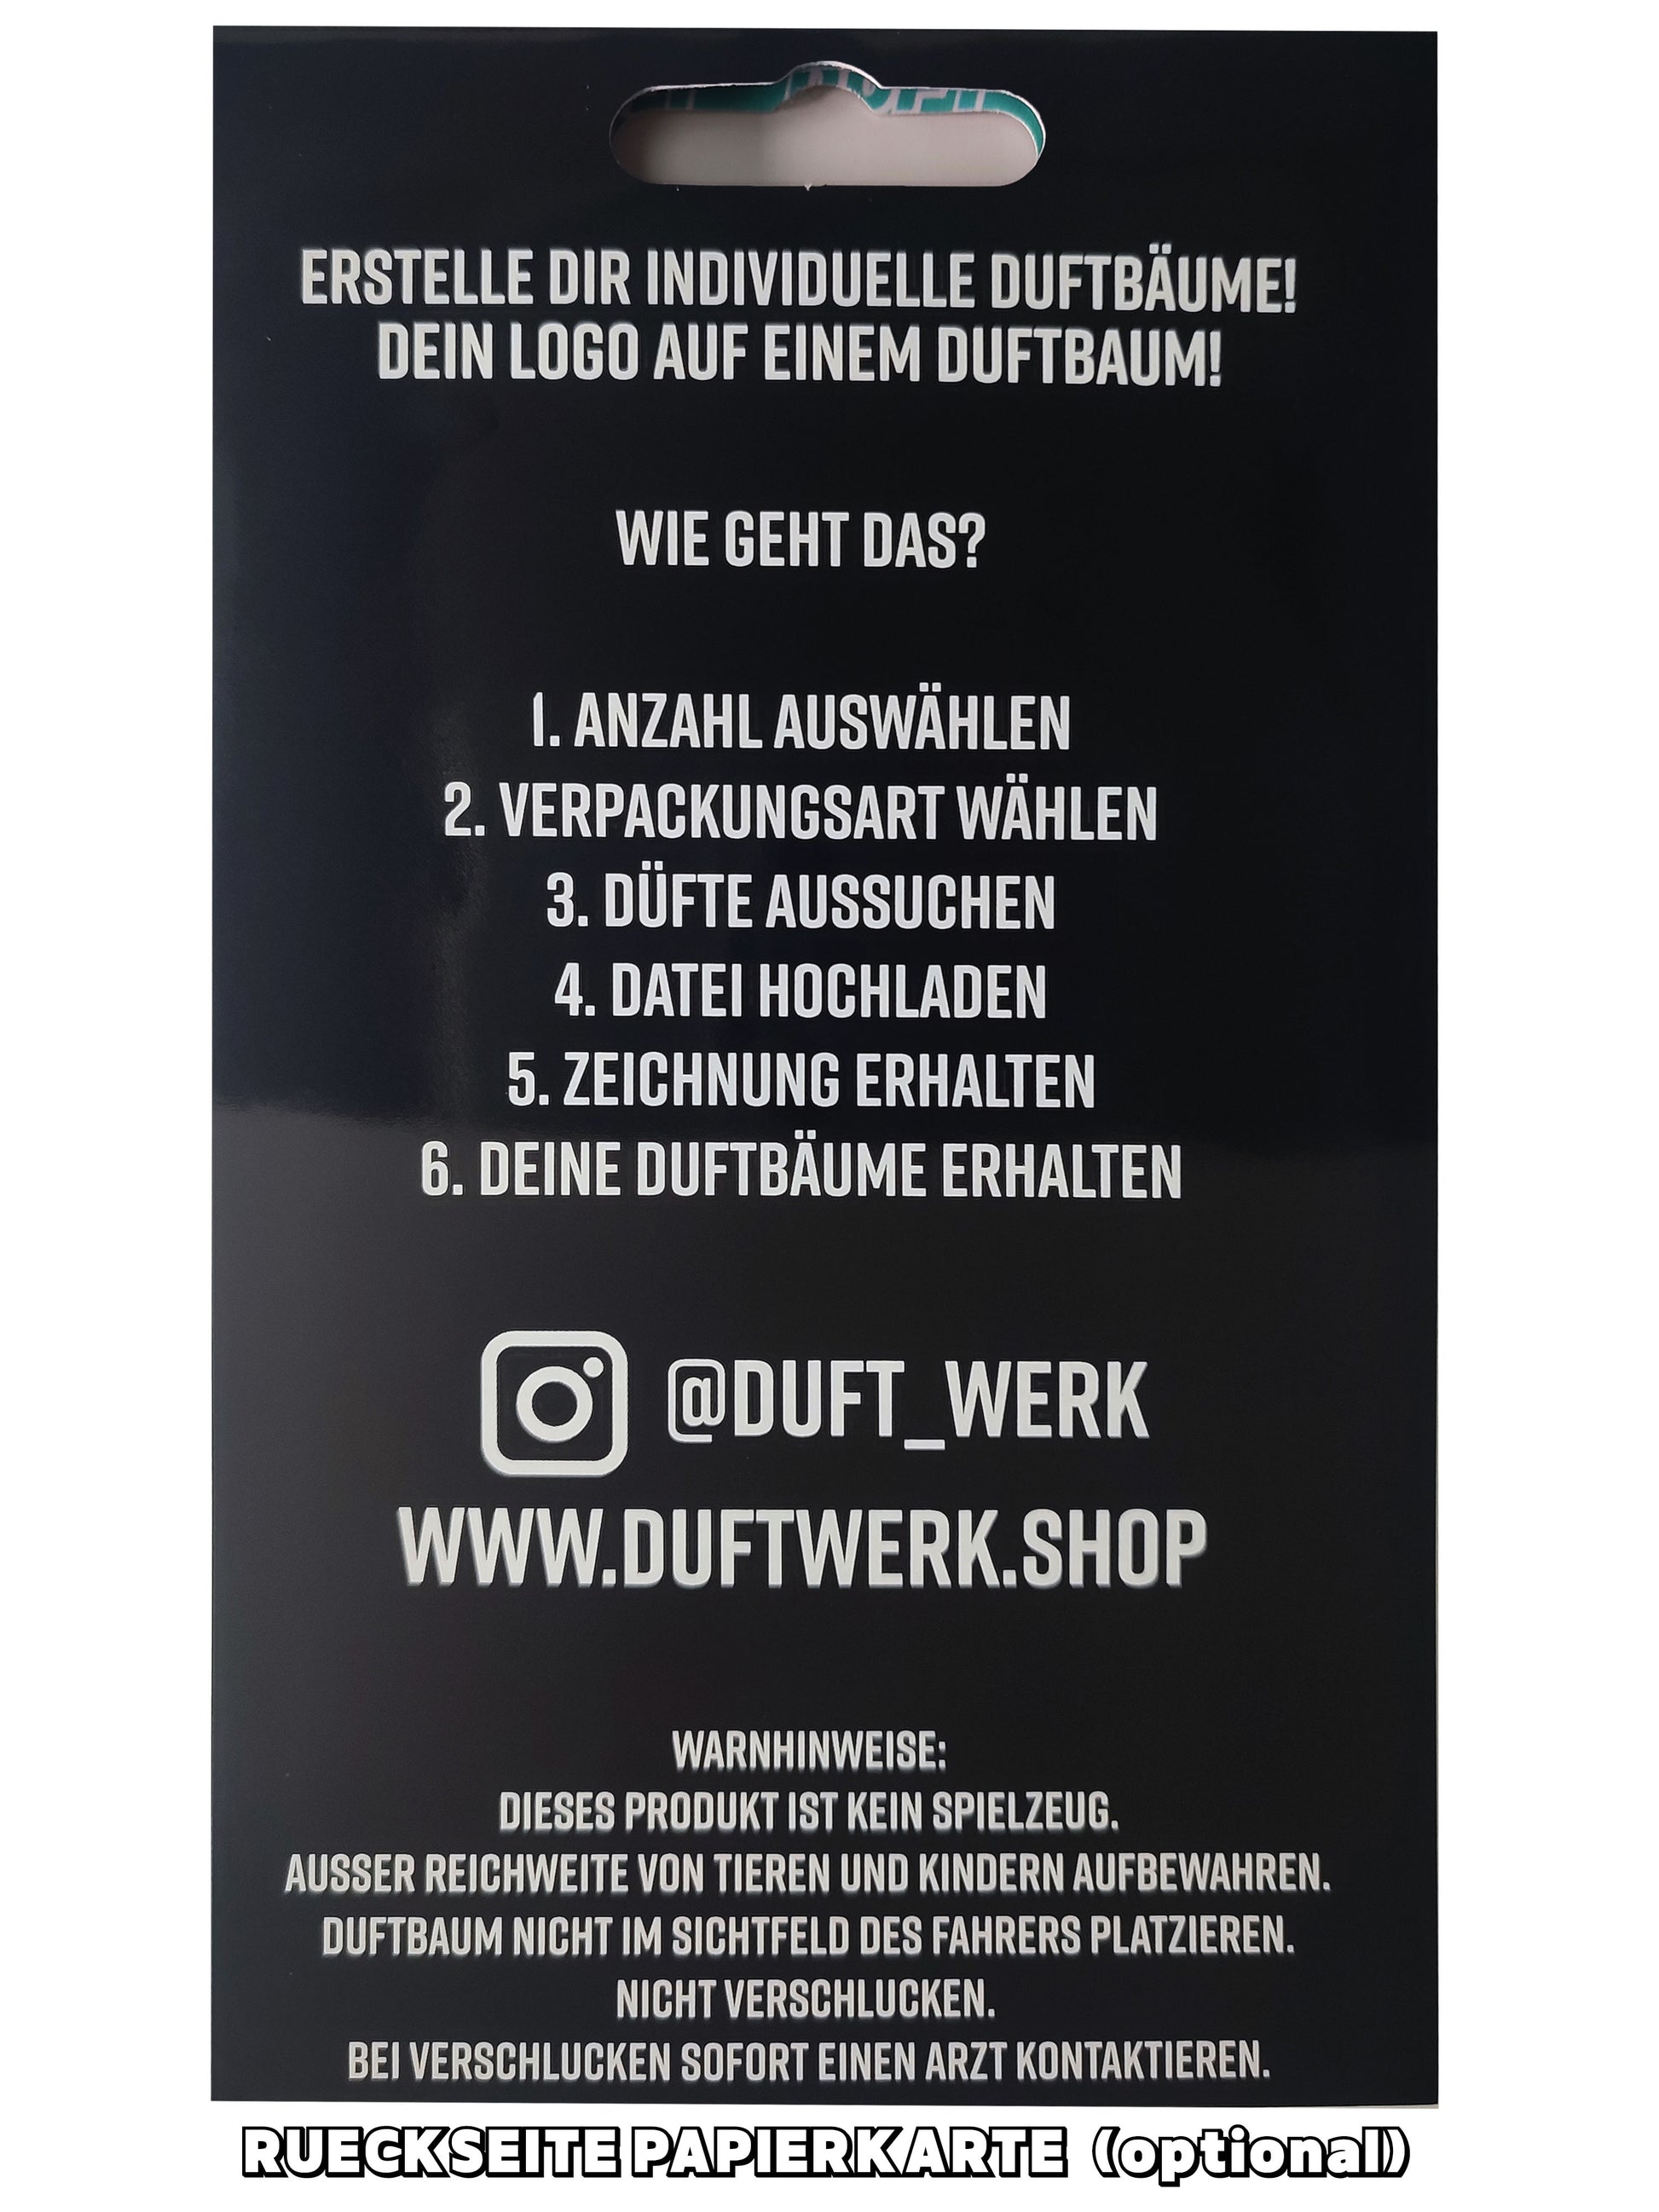 https://duftwerkshop.de/cdn/shop/files/mitpapierkarteback.jpg?v=1697970133&width=1946